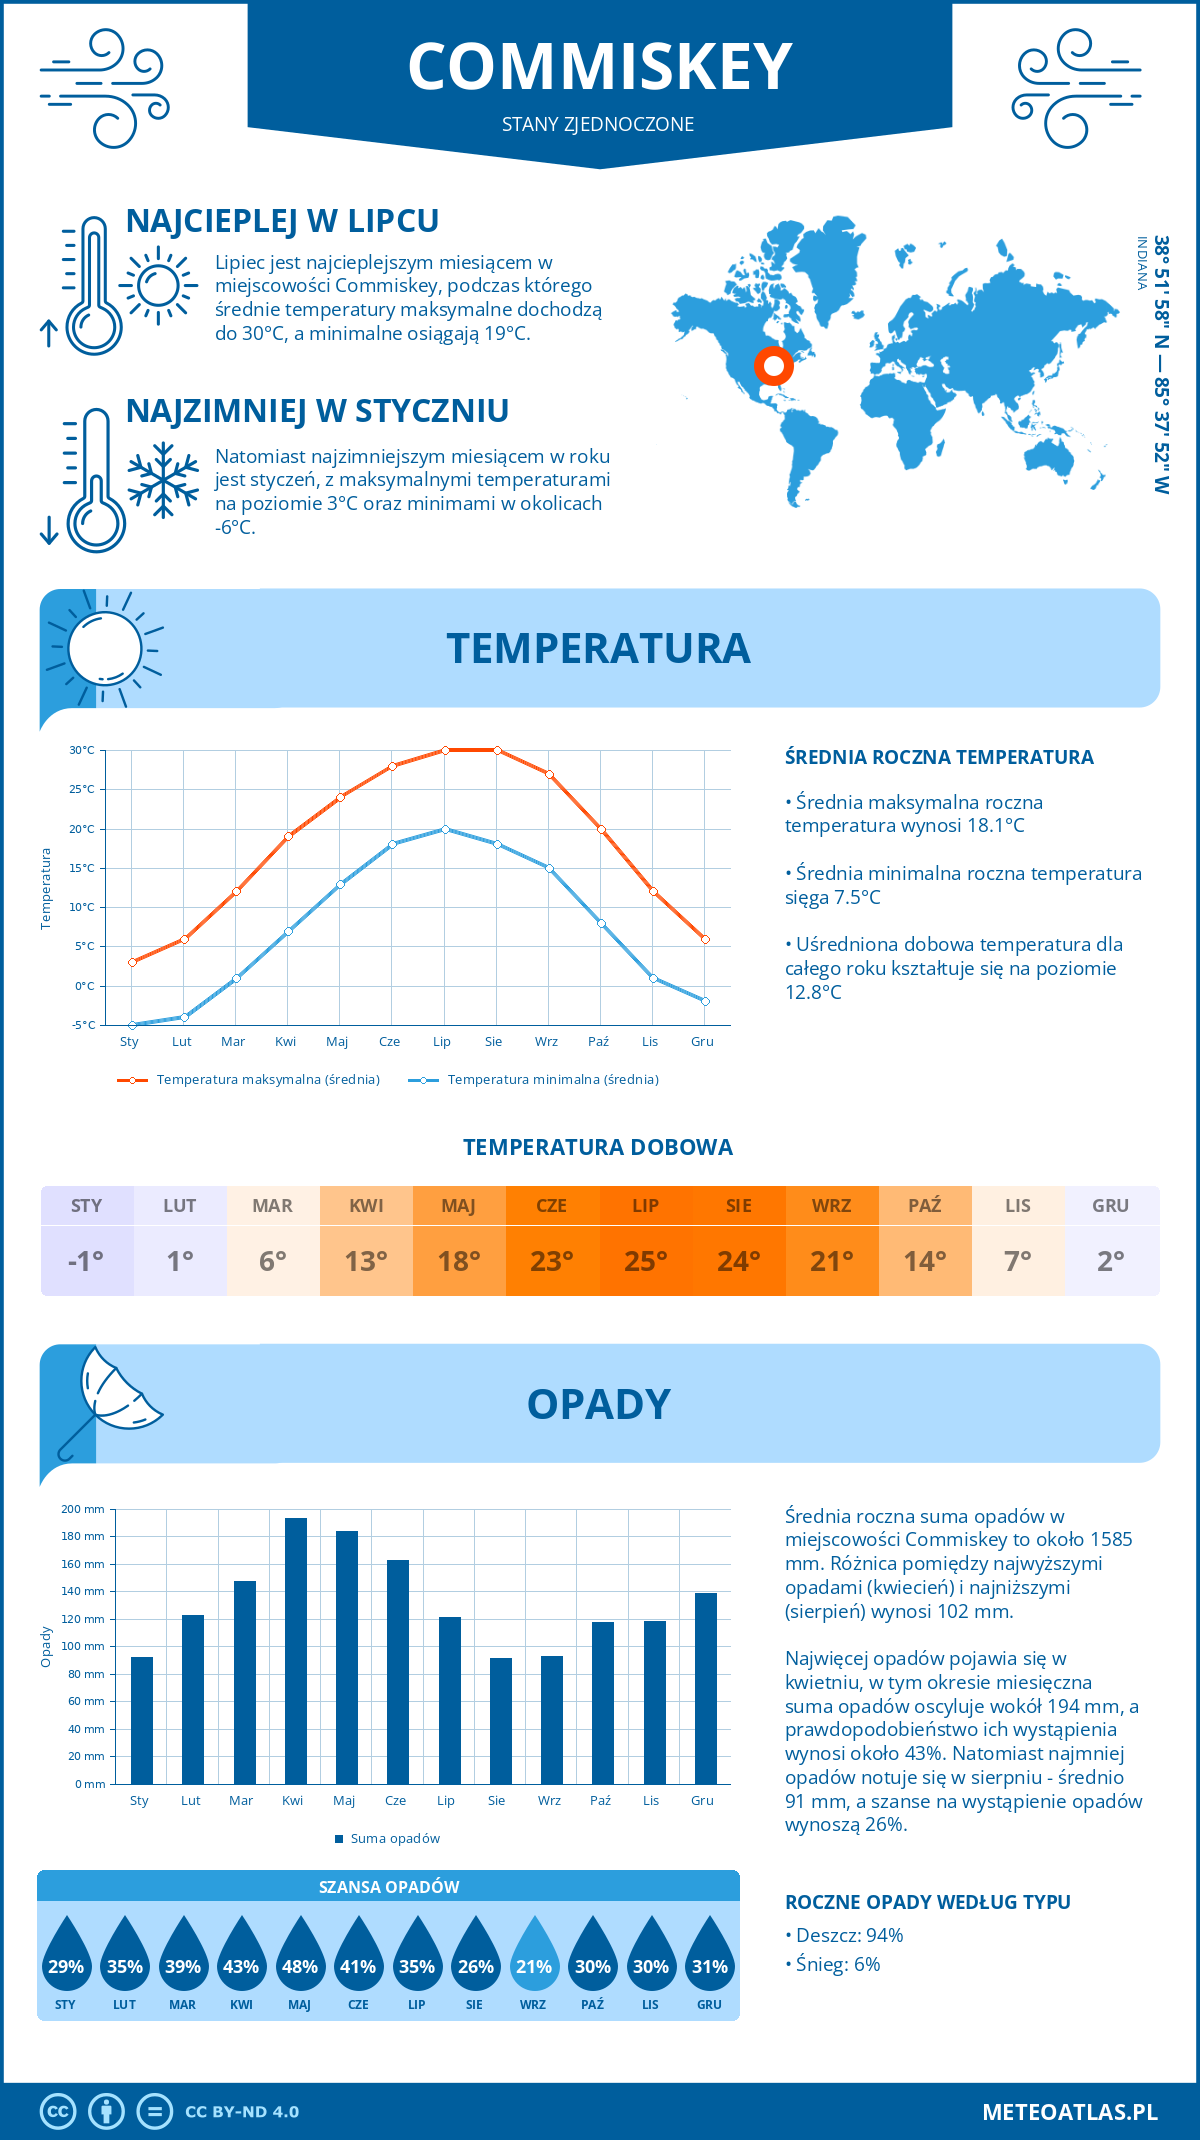 Pogoda Commiskey (Stany Zjednoczone). Temperatura oraz opady.